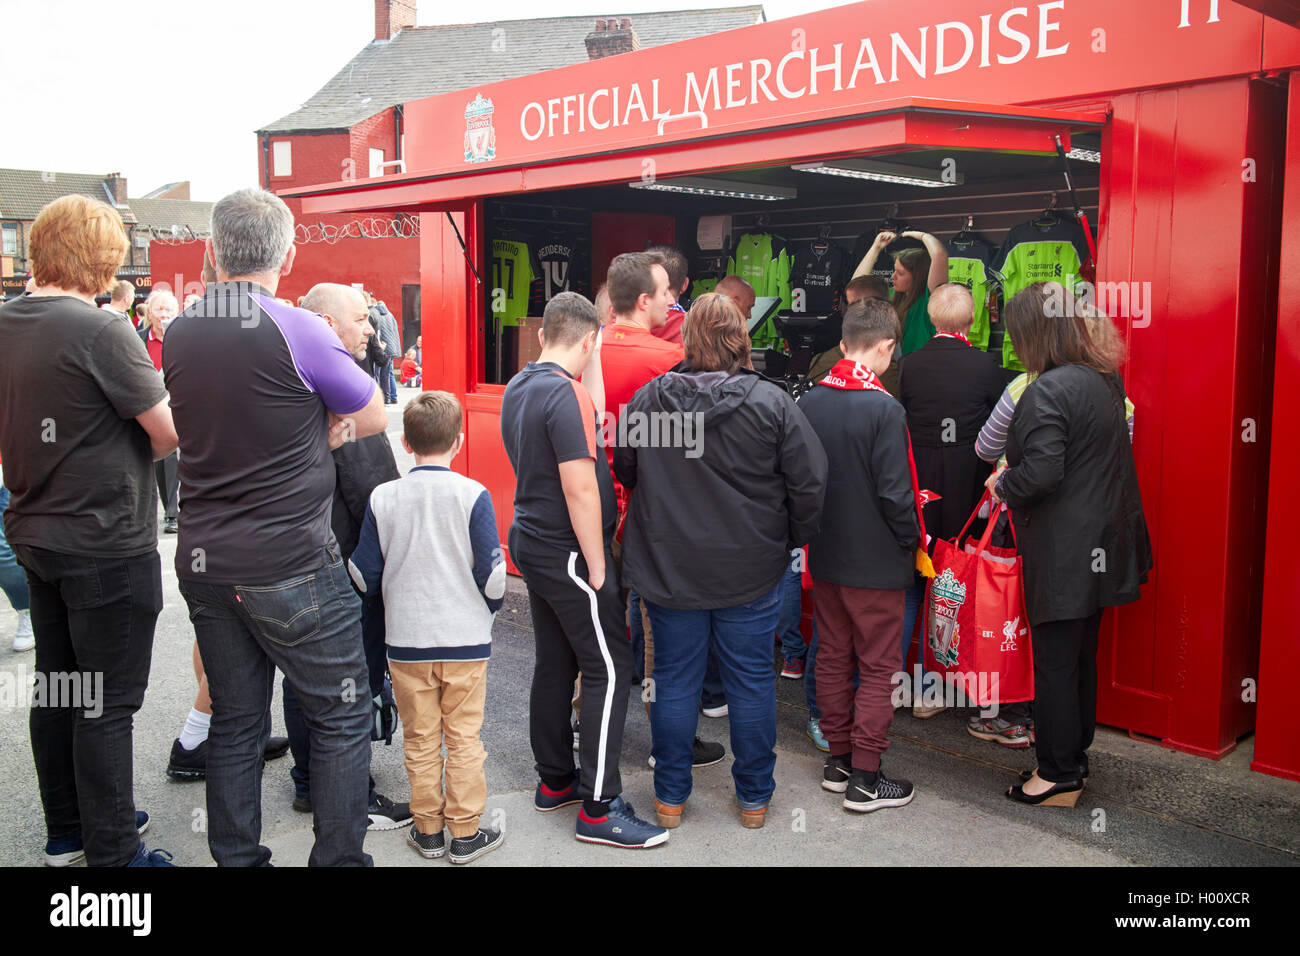 Colas de fans en mercancía oficial puesto en el Estadio Anfield Liverpool FC Liverpool Merseyside UK Foto de stock